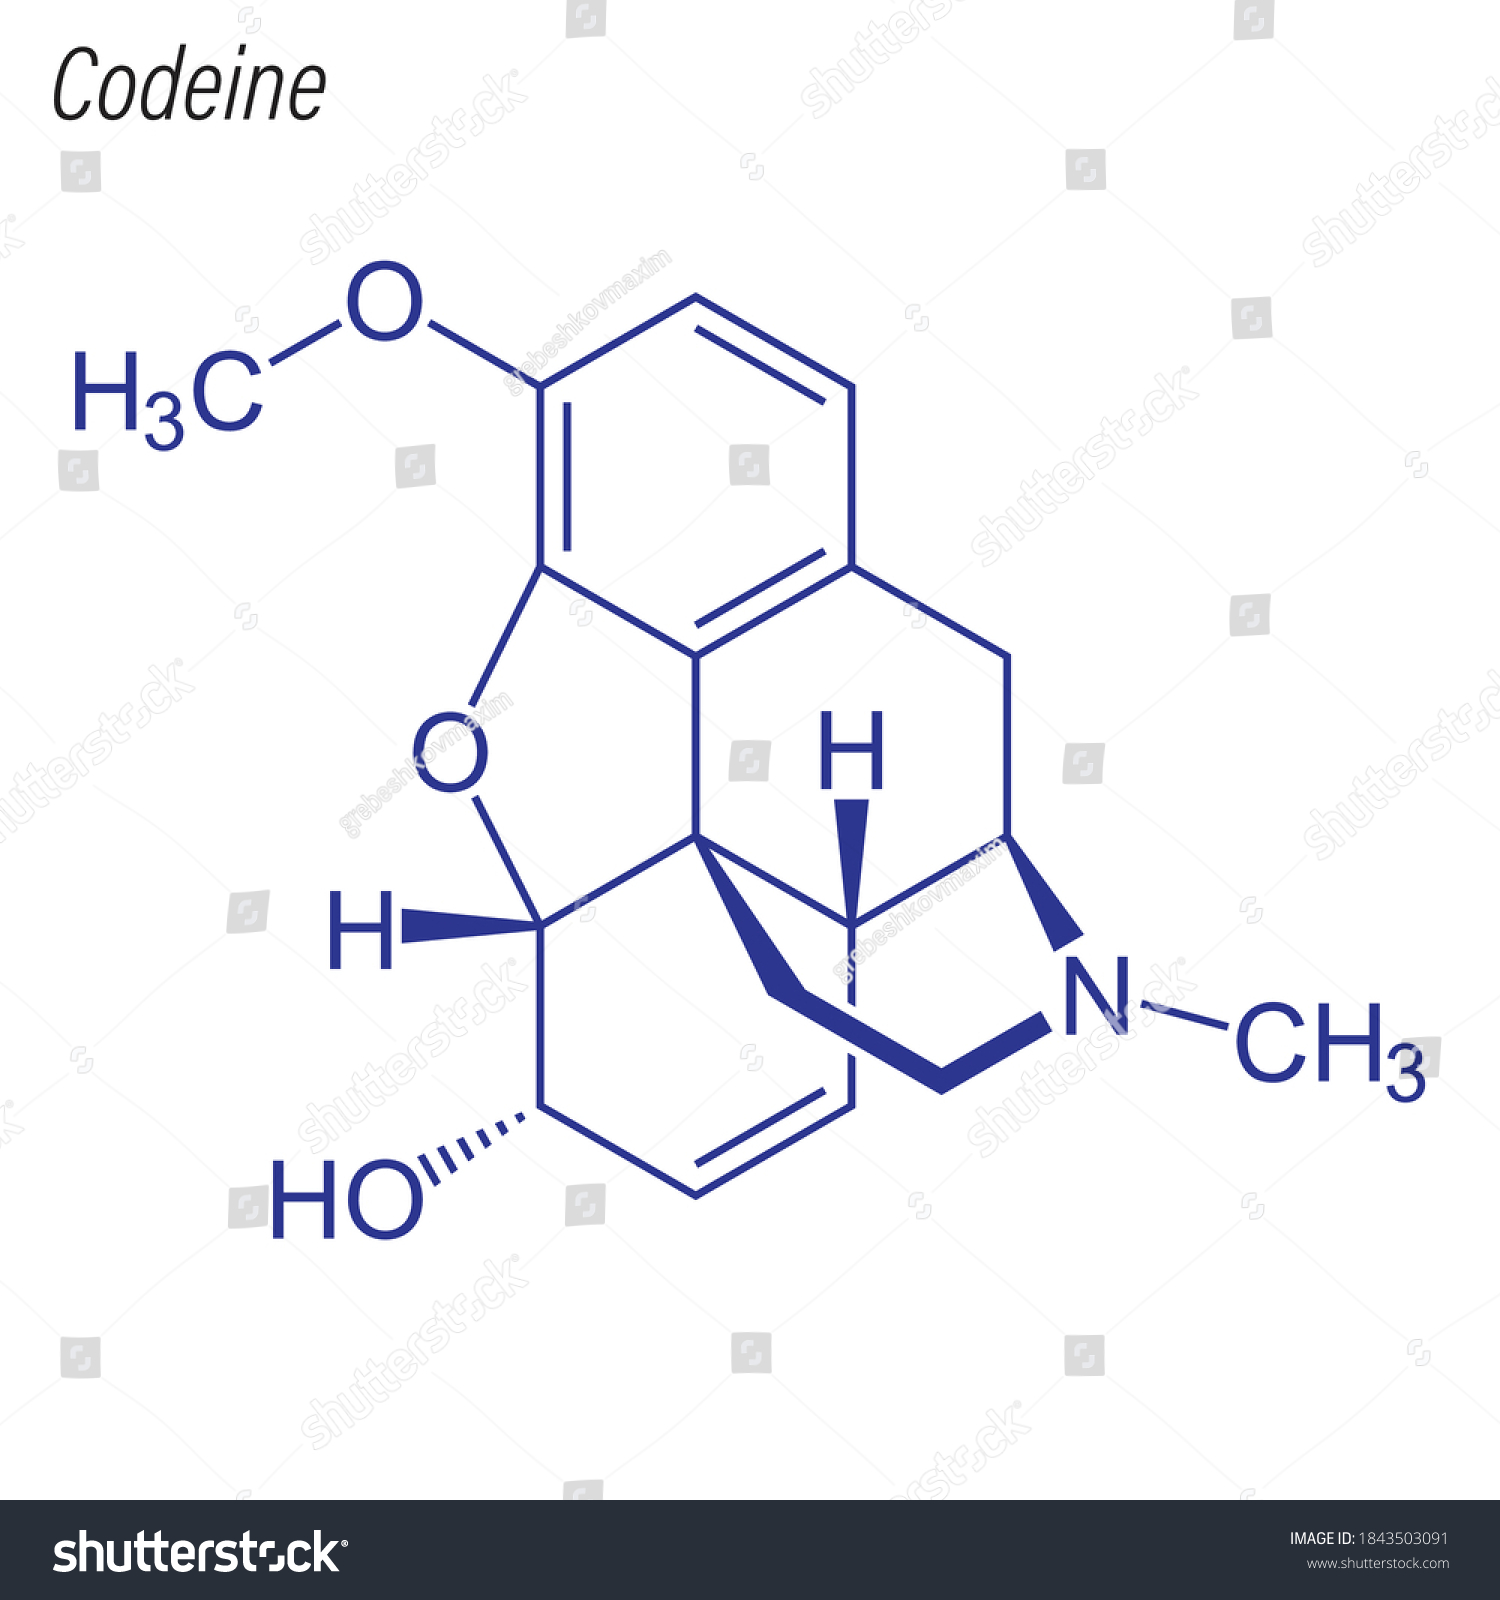 SVG of Skeletal formula of Codeine. Drug chemical molecule. svg